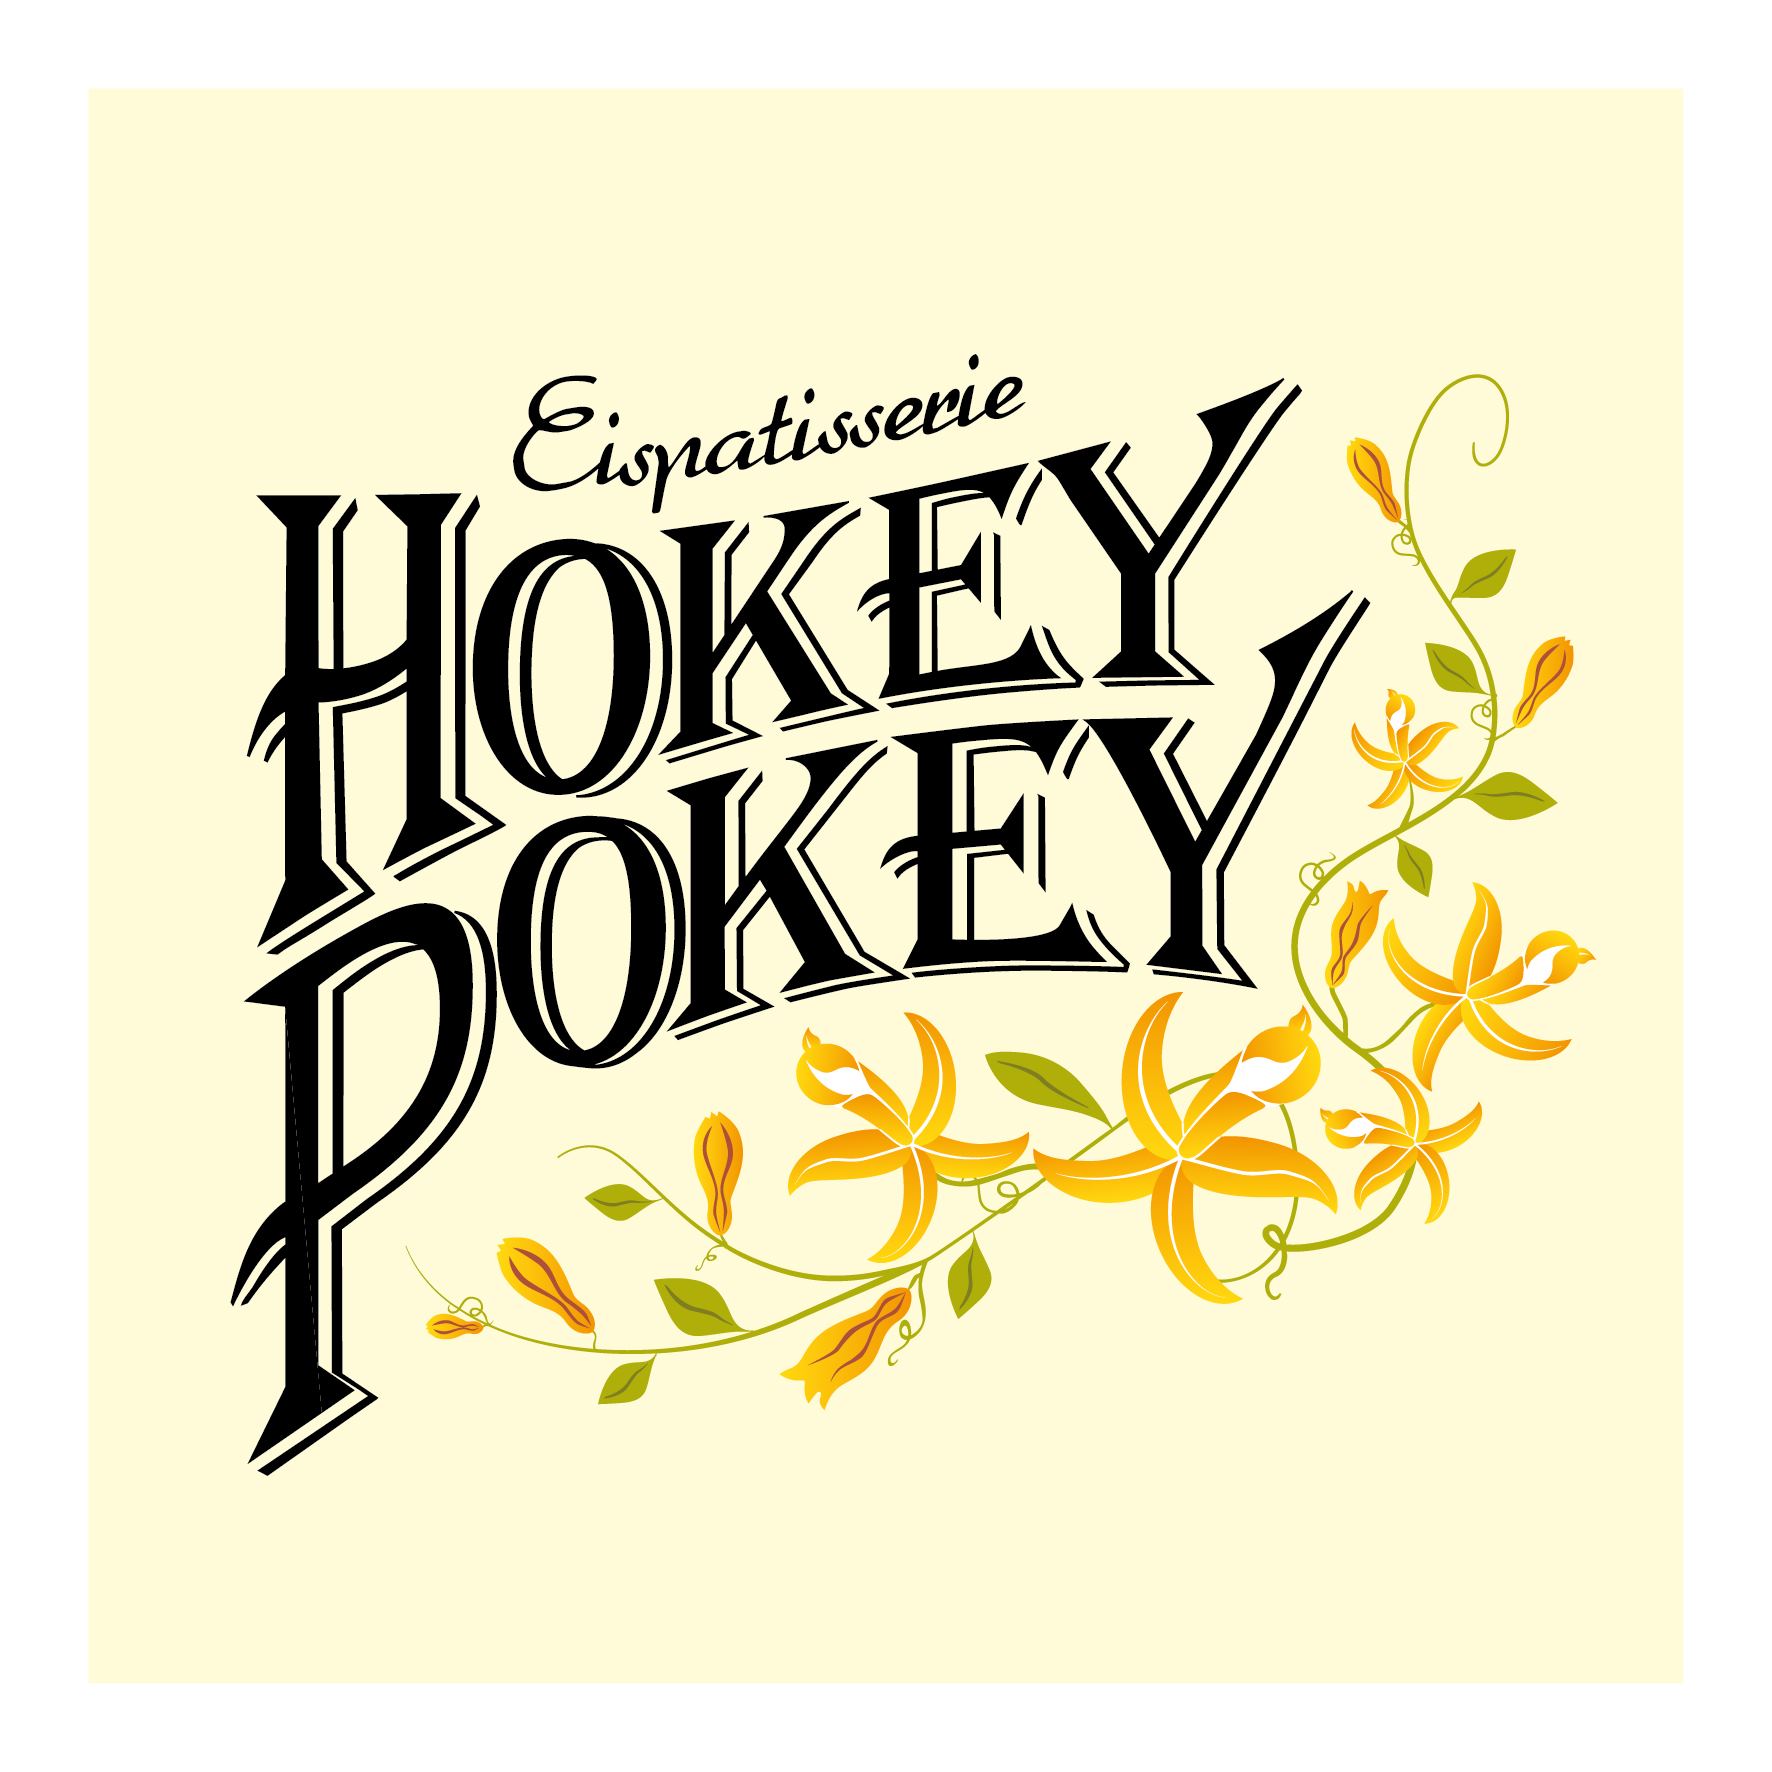 fu_2015_hokeypokey_logo